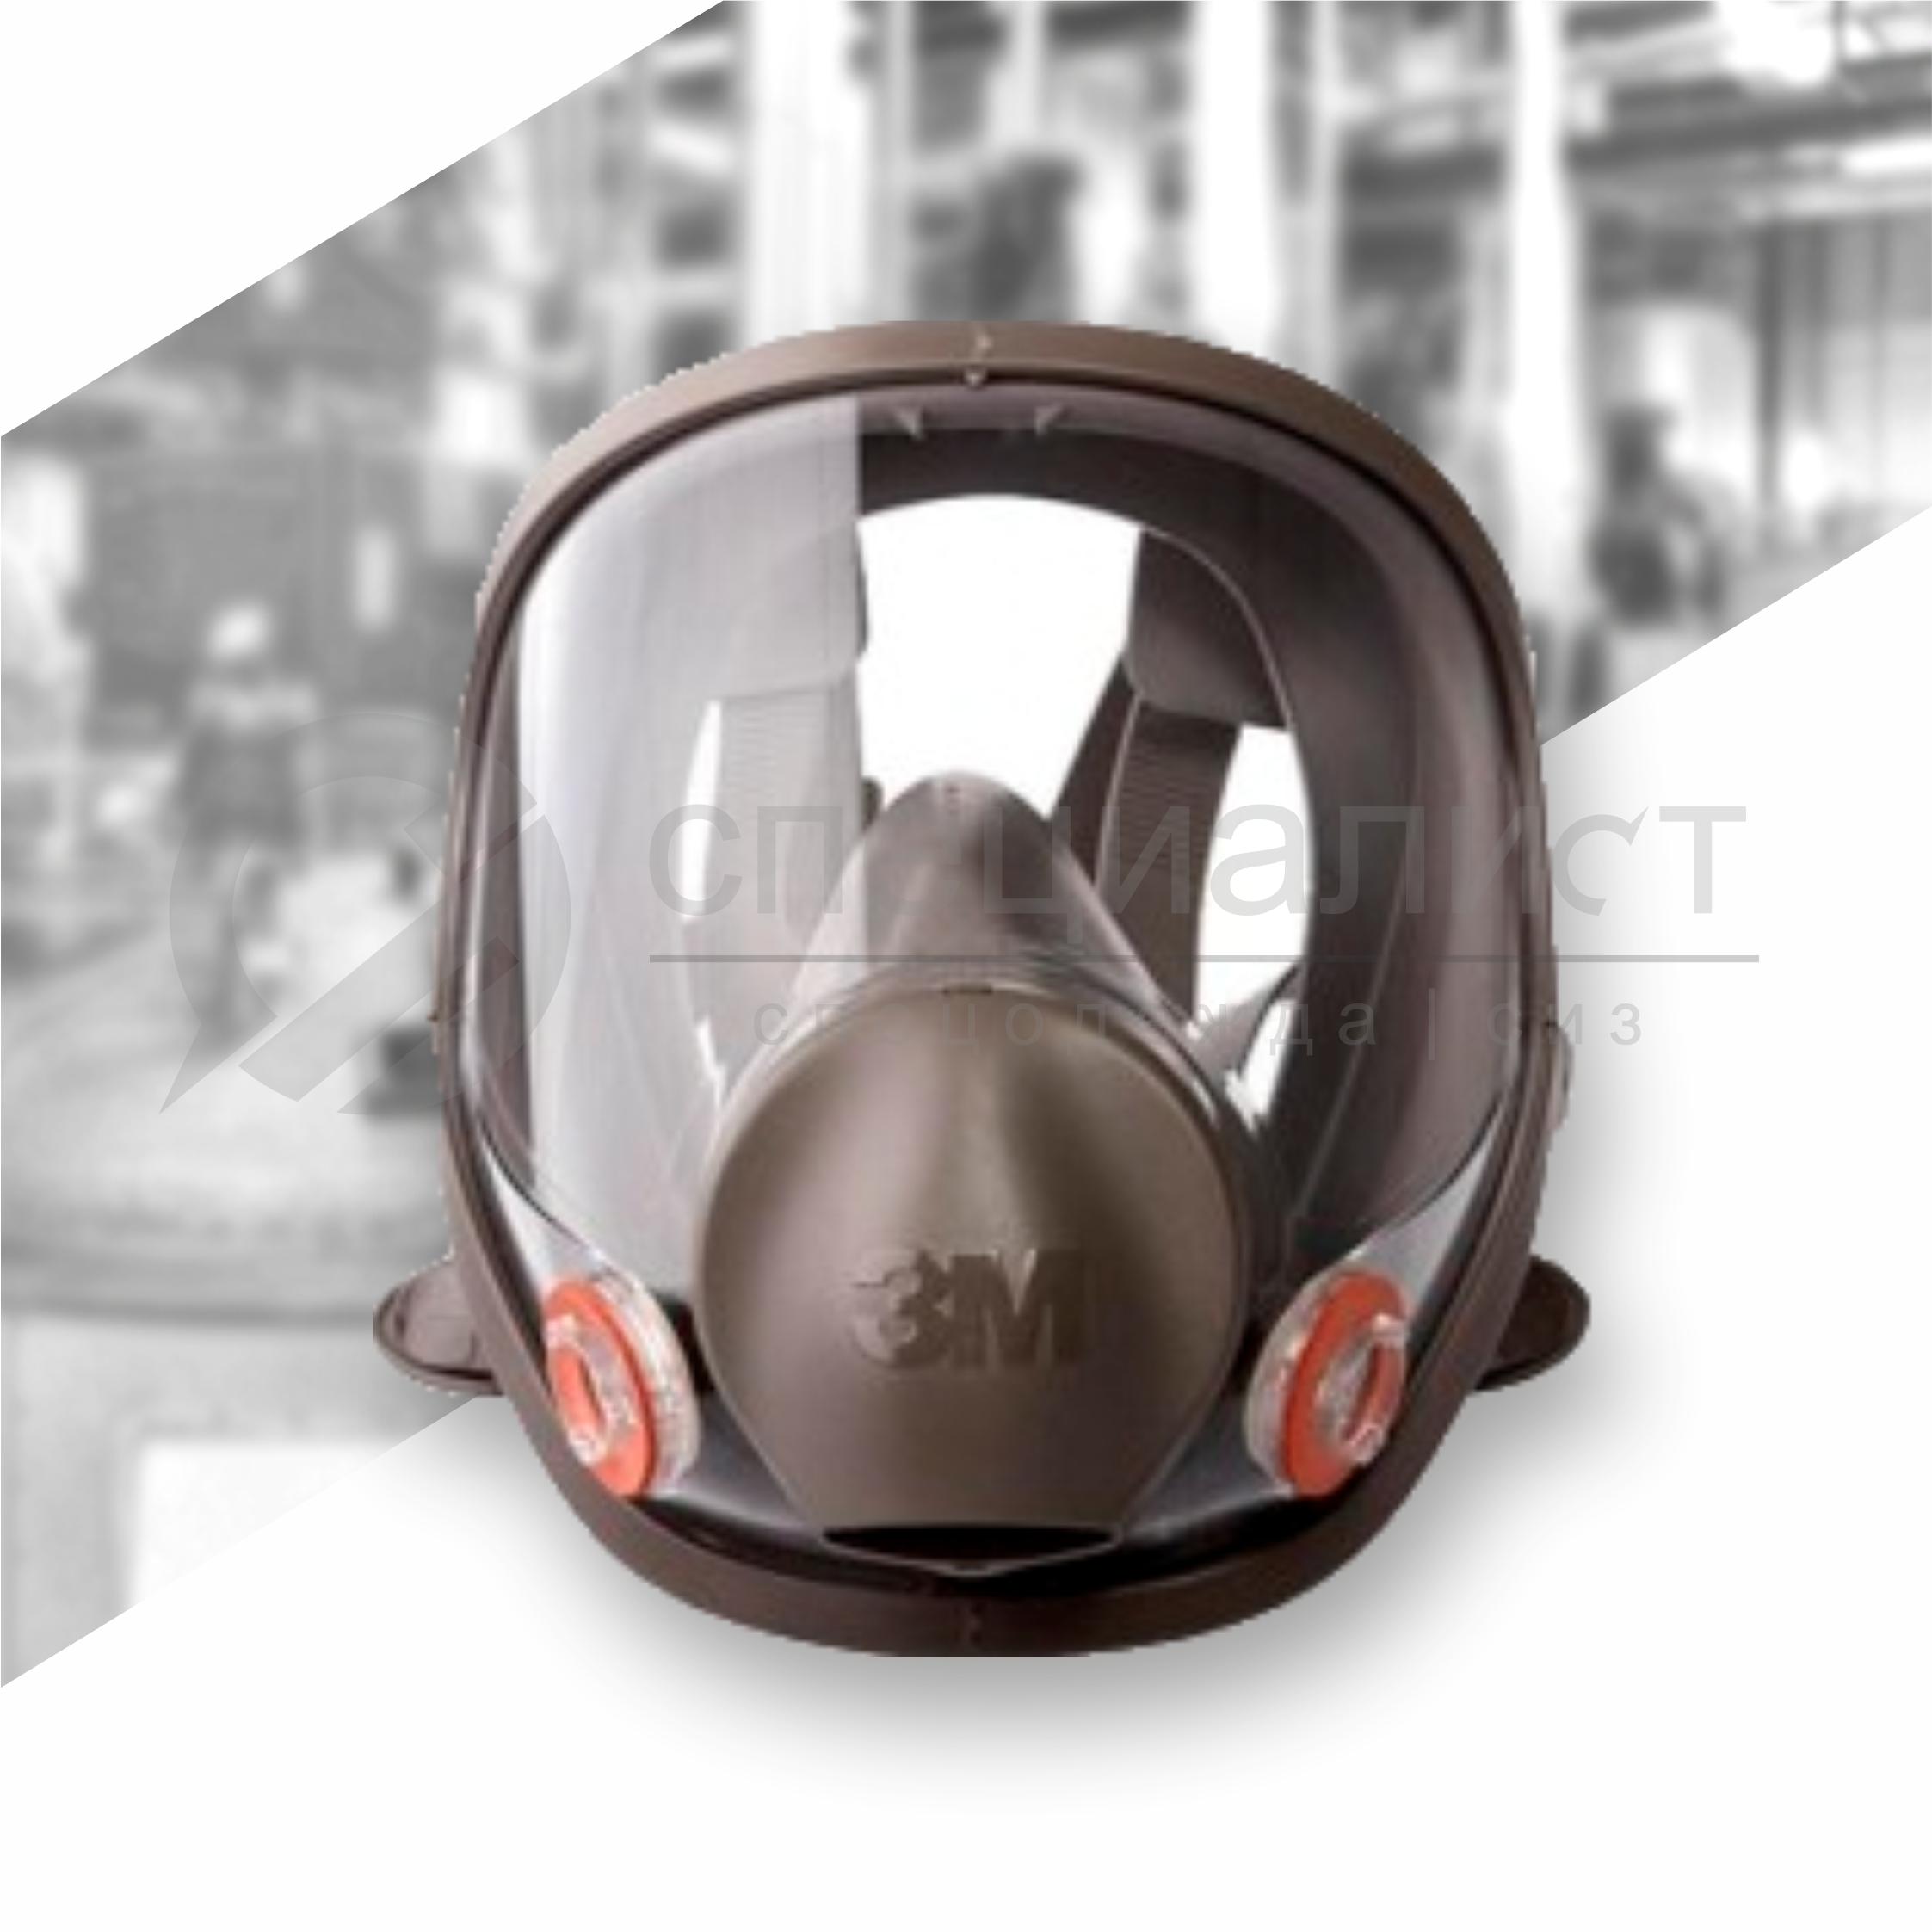 Полнолицевая маска "3М 6800" Купить средства индивидуальной защиты по низкой цене. Большой выбор современных моделей СИЗ, 